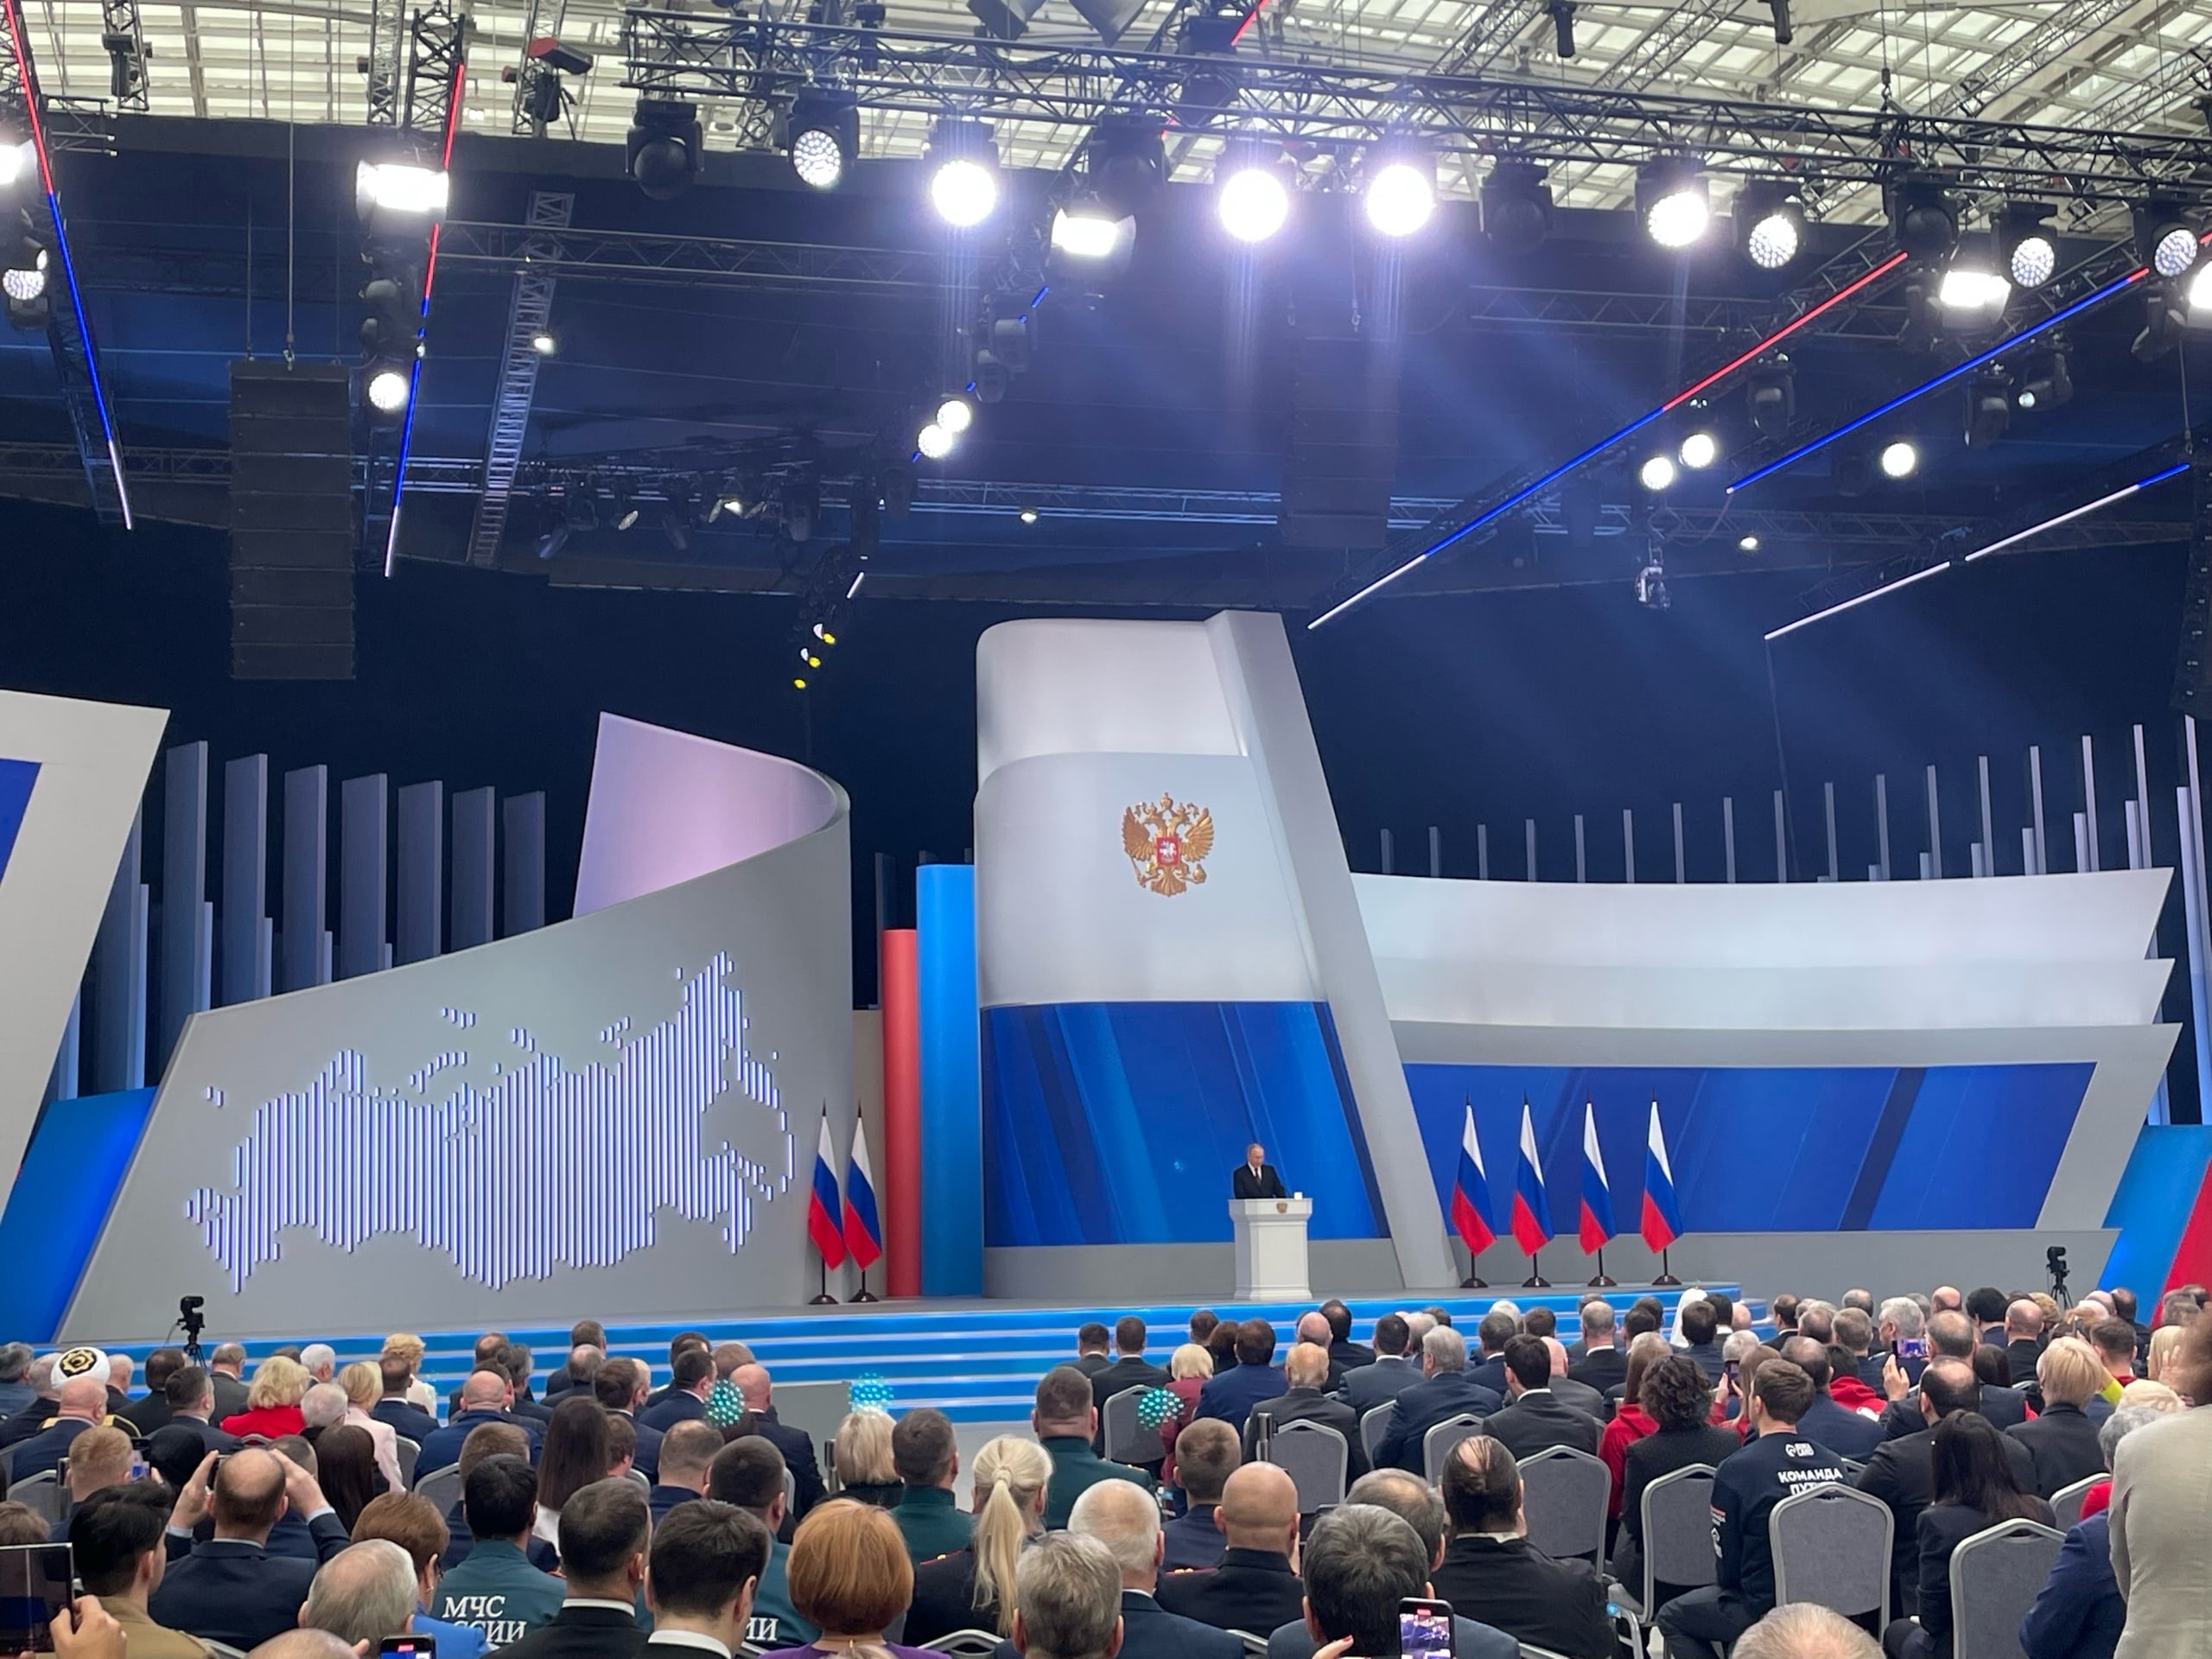 Шандалович: «Предложенный президентом план развития страны делает Россию еще более мощной, сильной, конкурентной и суверенной державой» 